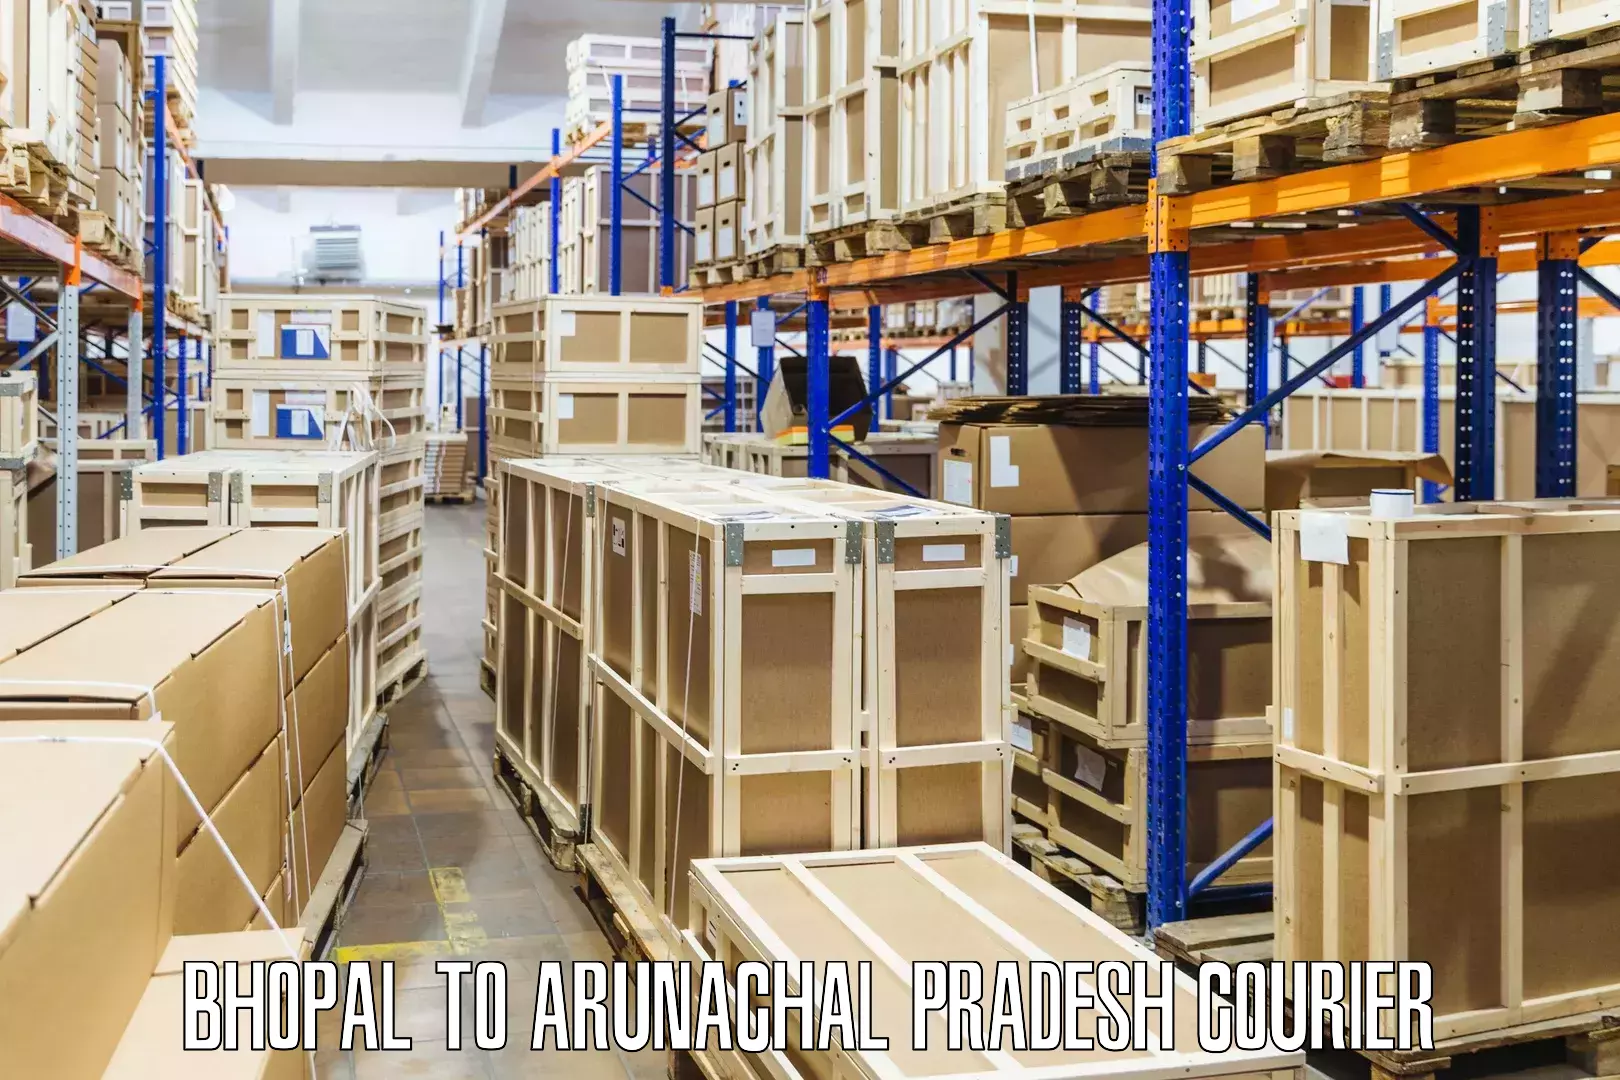 Pharmaceutical courier Bhopal to Arunachal Pradesh